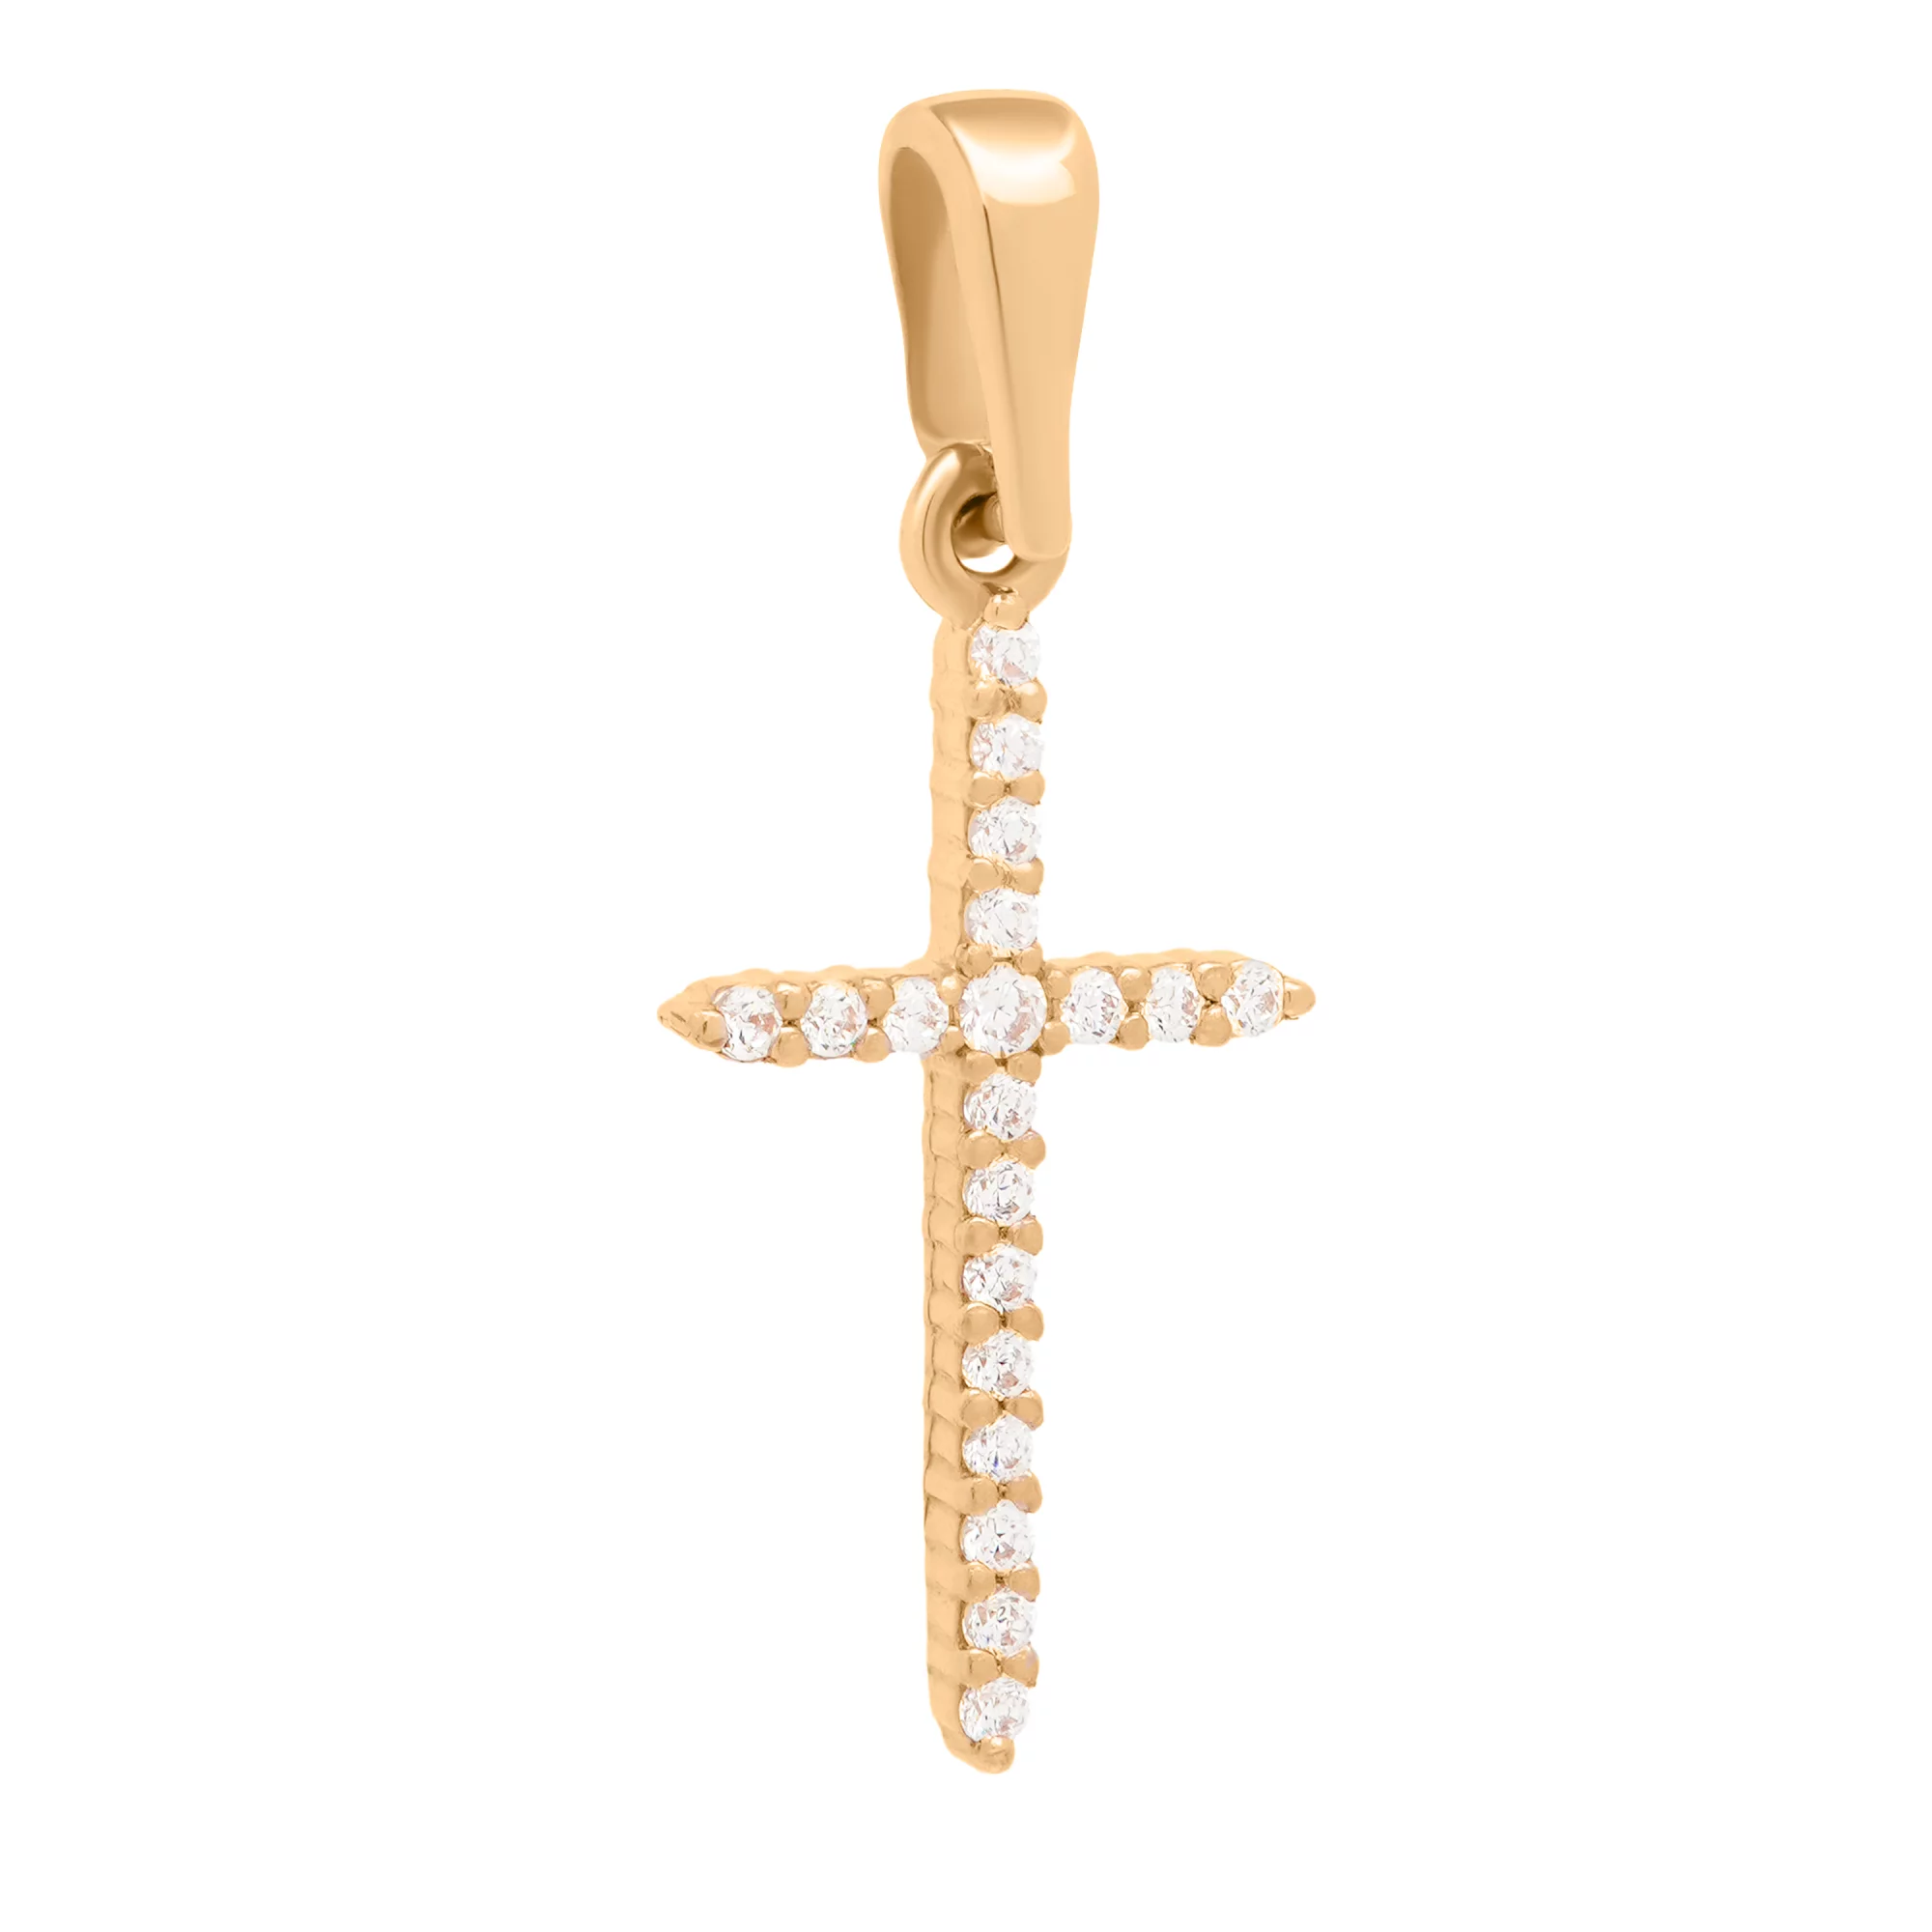 Крестик в красном золоте с дорожкой фианитов - 1740100 – изображение 1